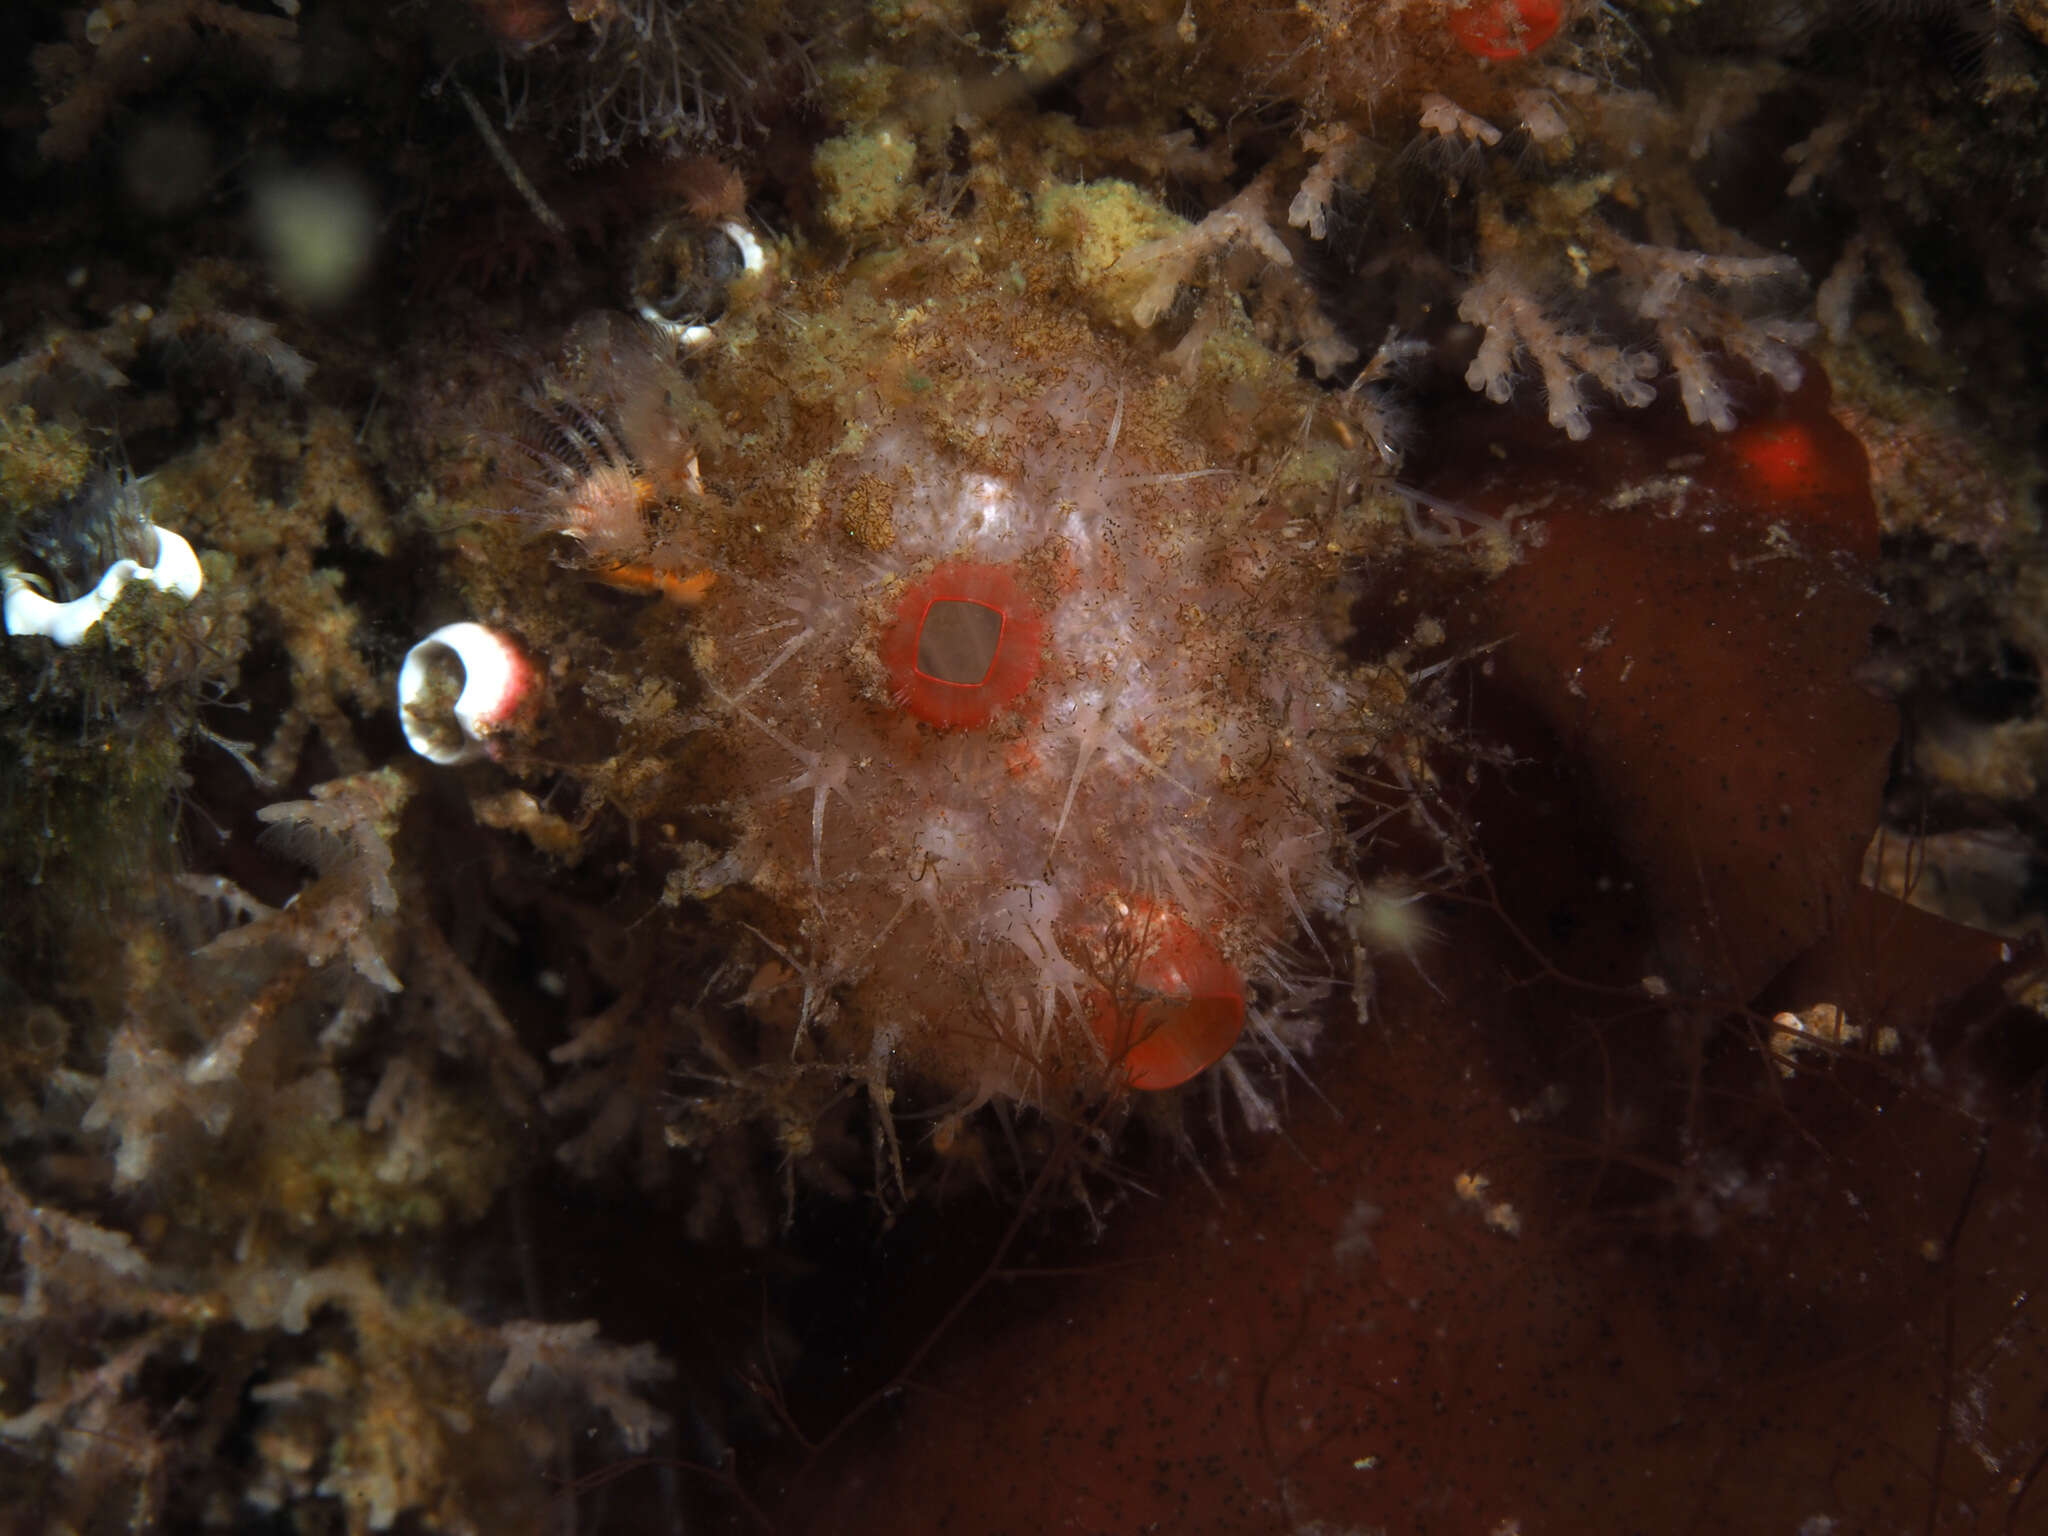 Image of cactus sea squirt